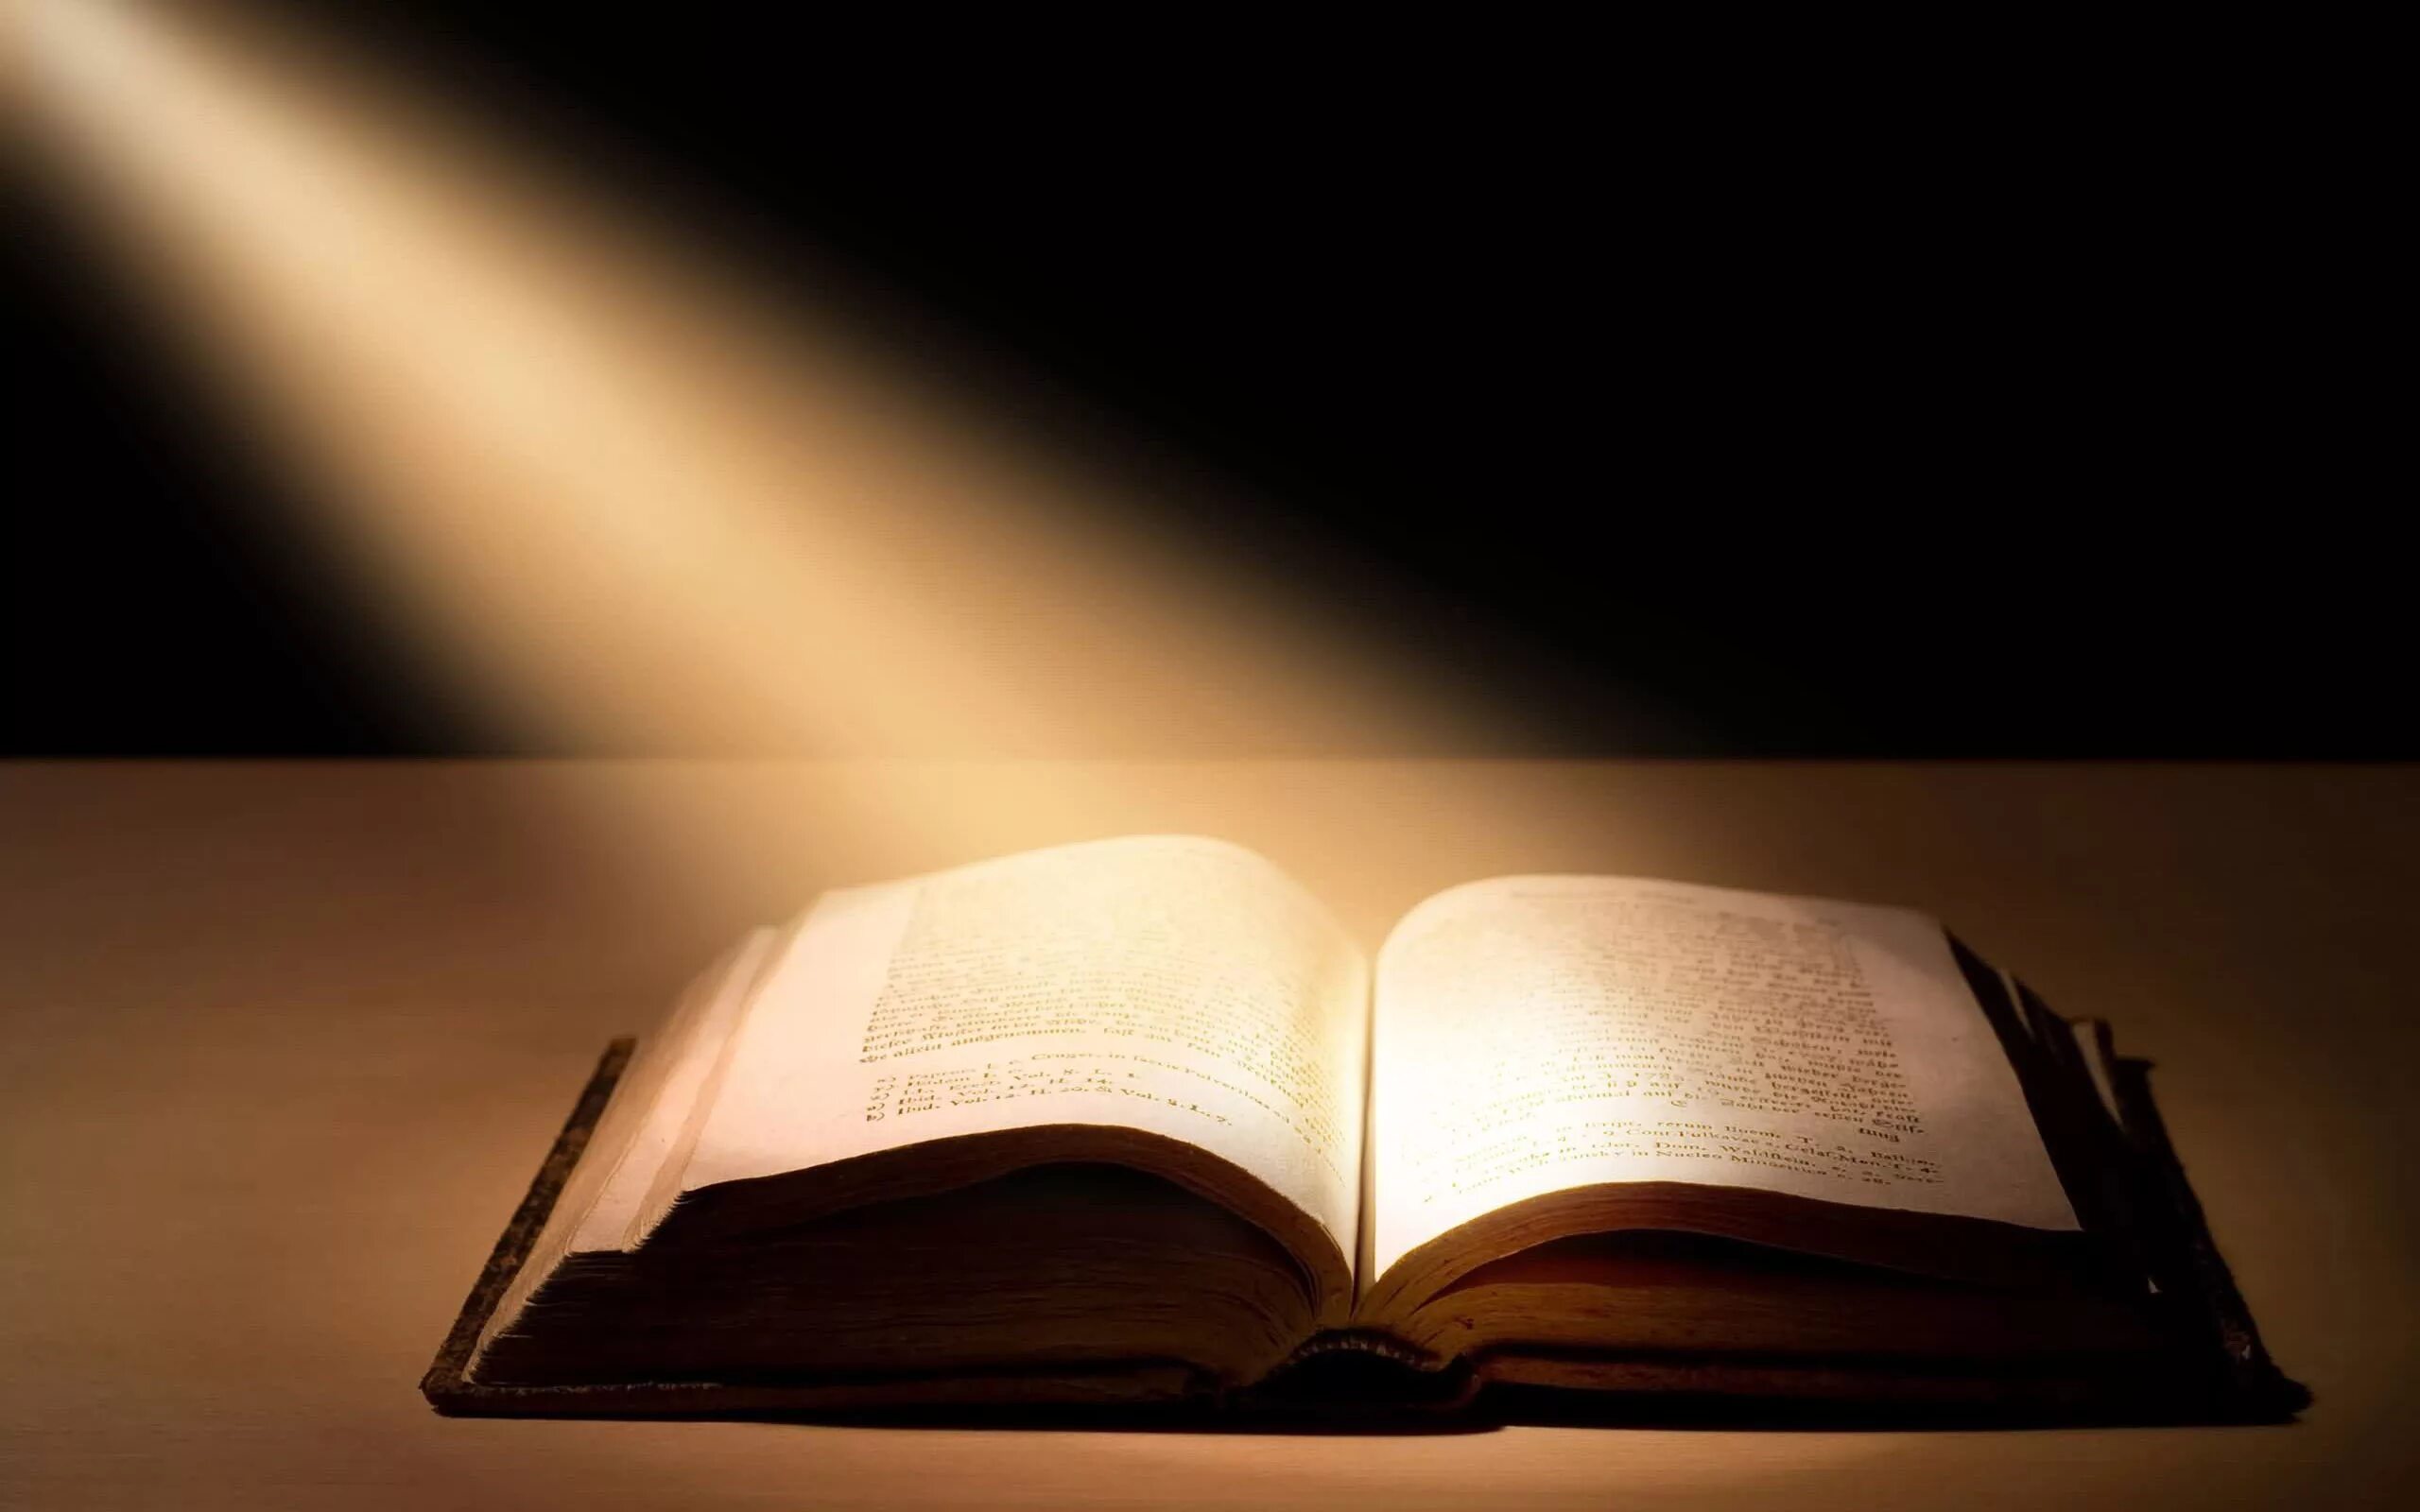 Давали сильные знания. Заставка в книге. Чтение Священного Писания. Книги на темном фоне. Красивый фон с книгами.